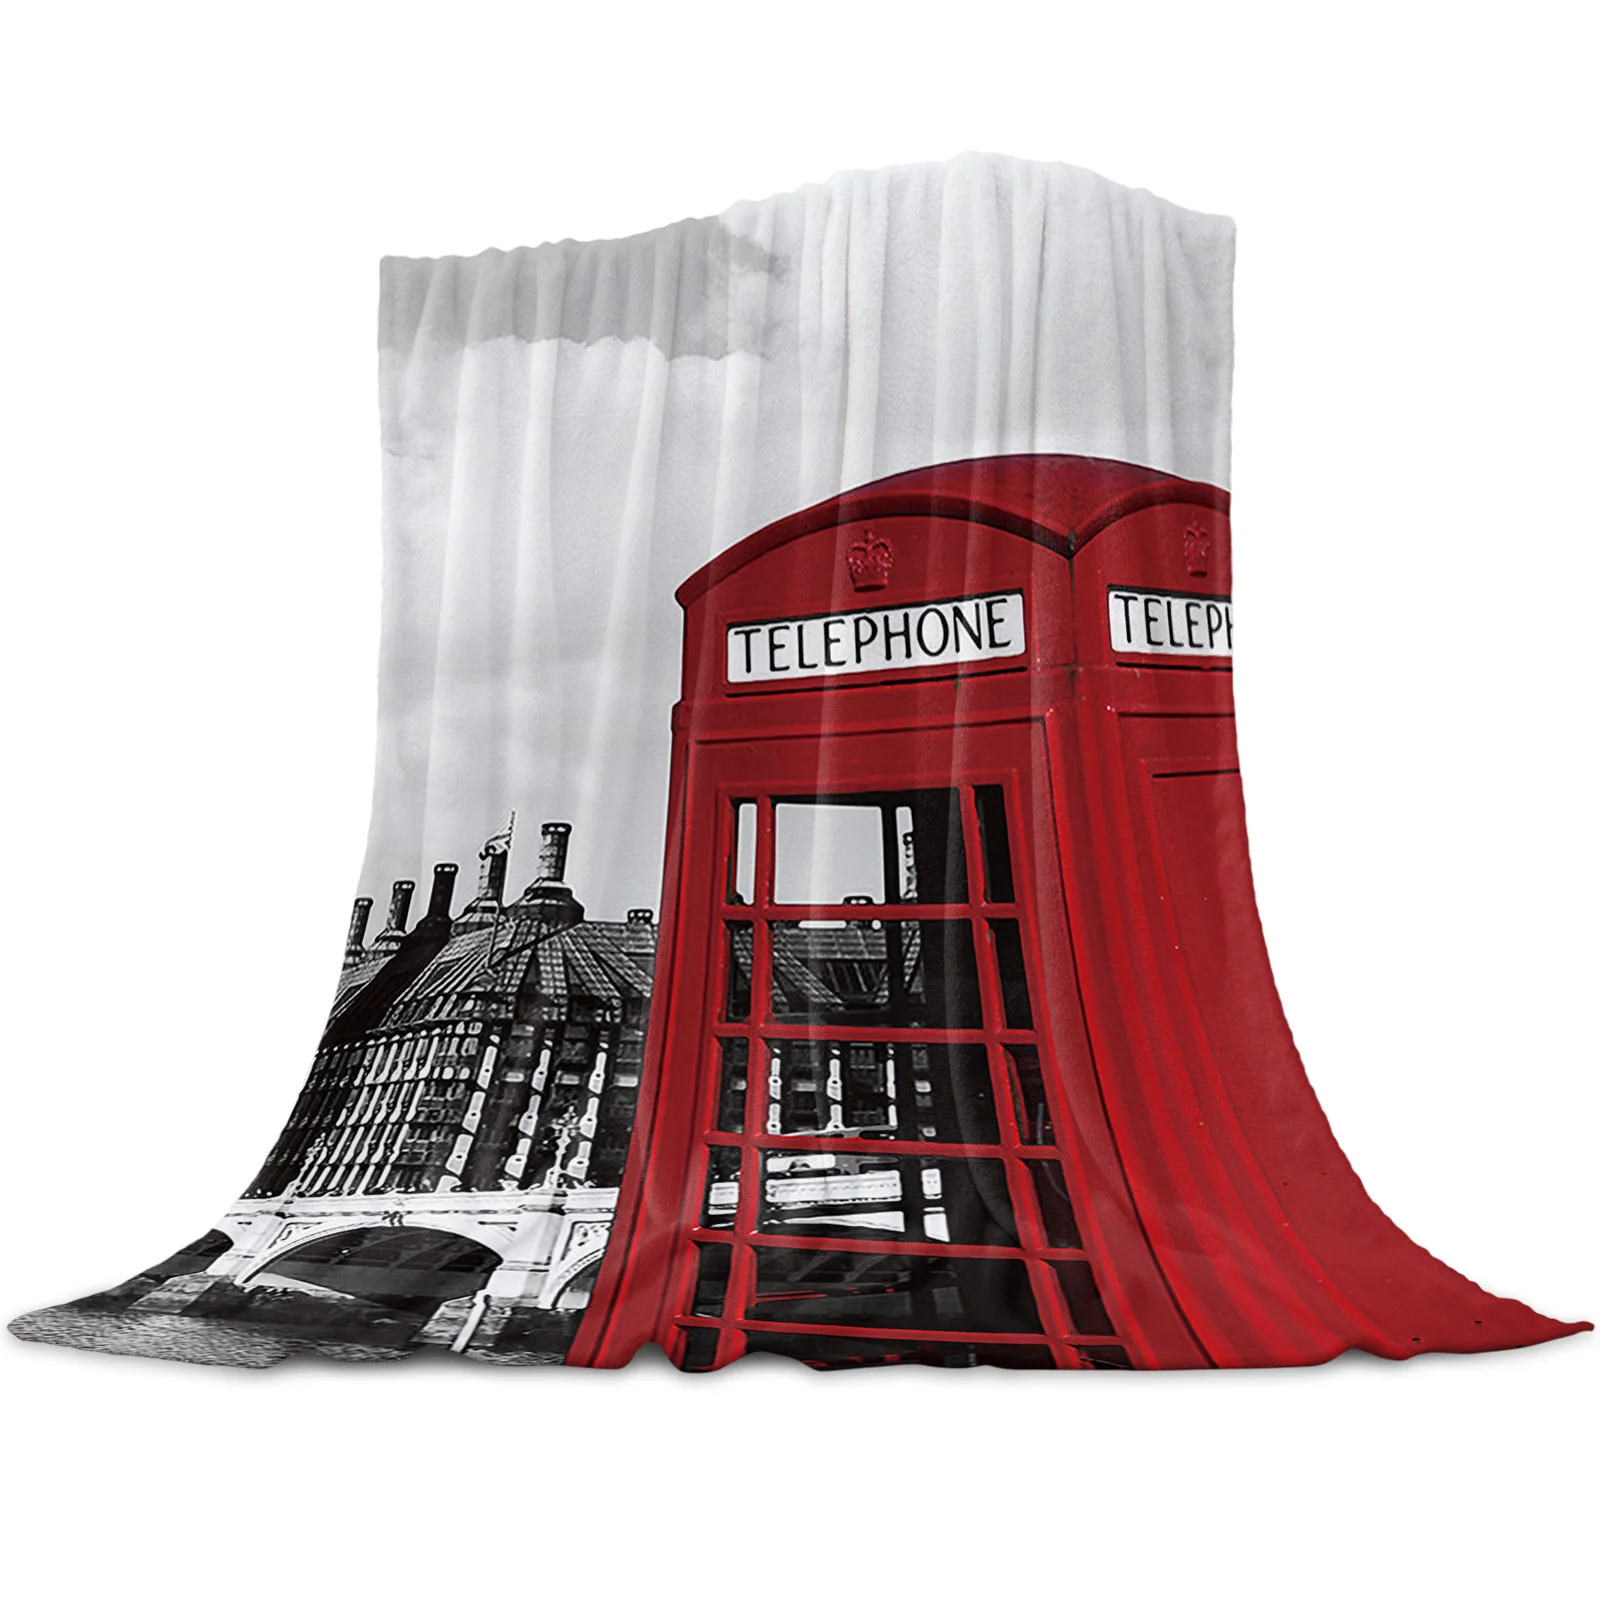 

Vehicle Bedspread Blanket High Density London Building Big Ben Super Soft Flannel Blankets for Sofa Bed Car Portable